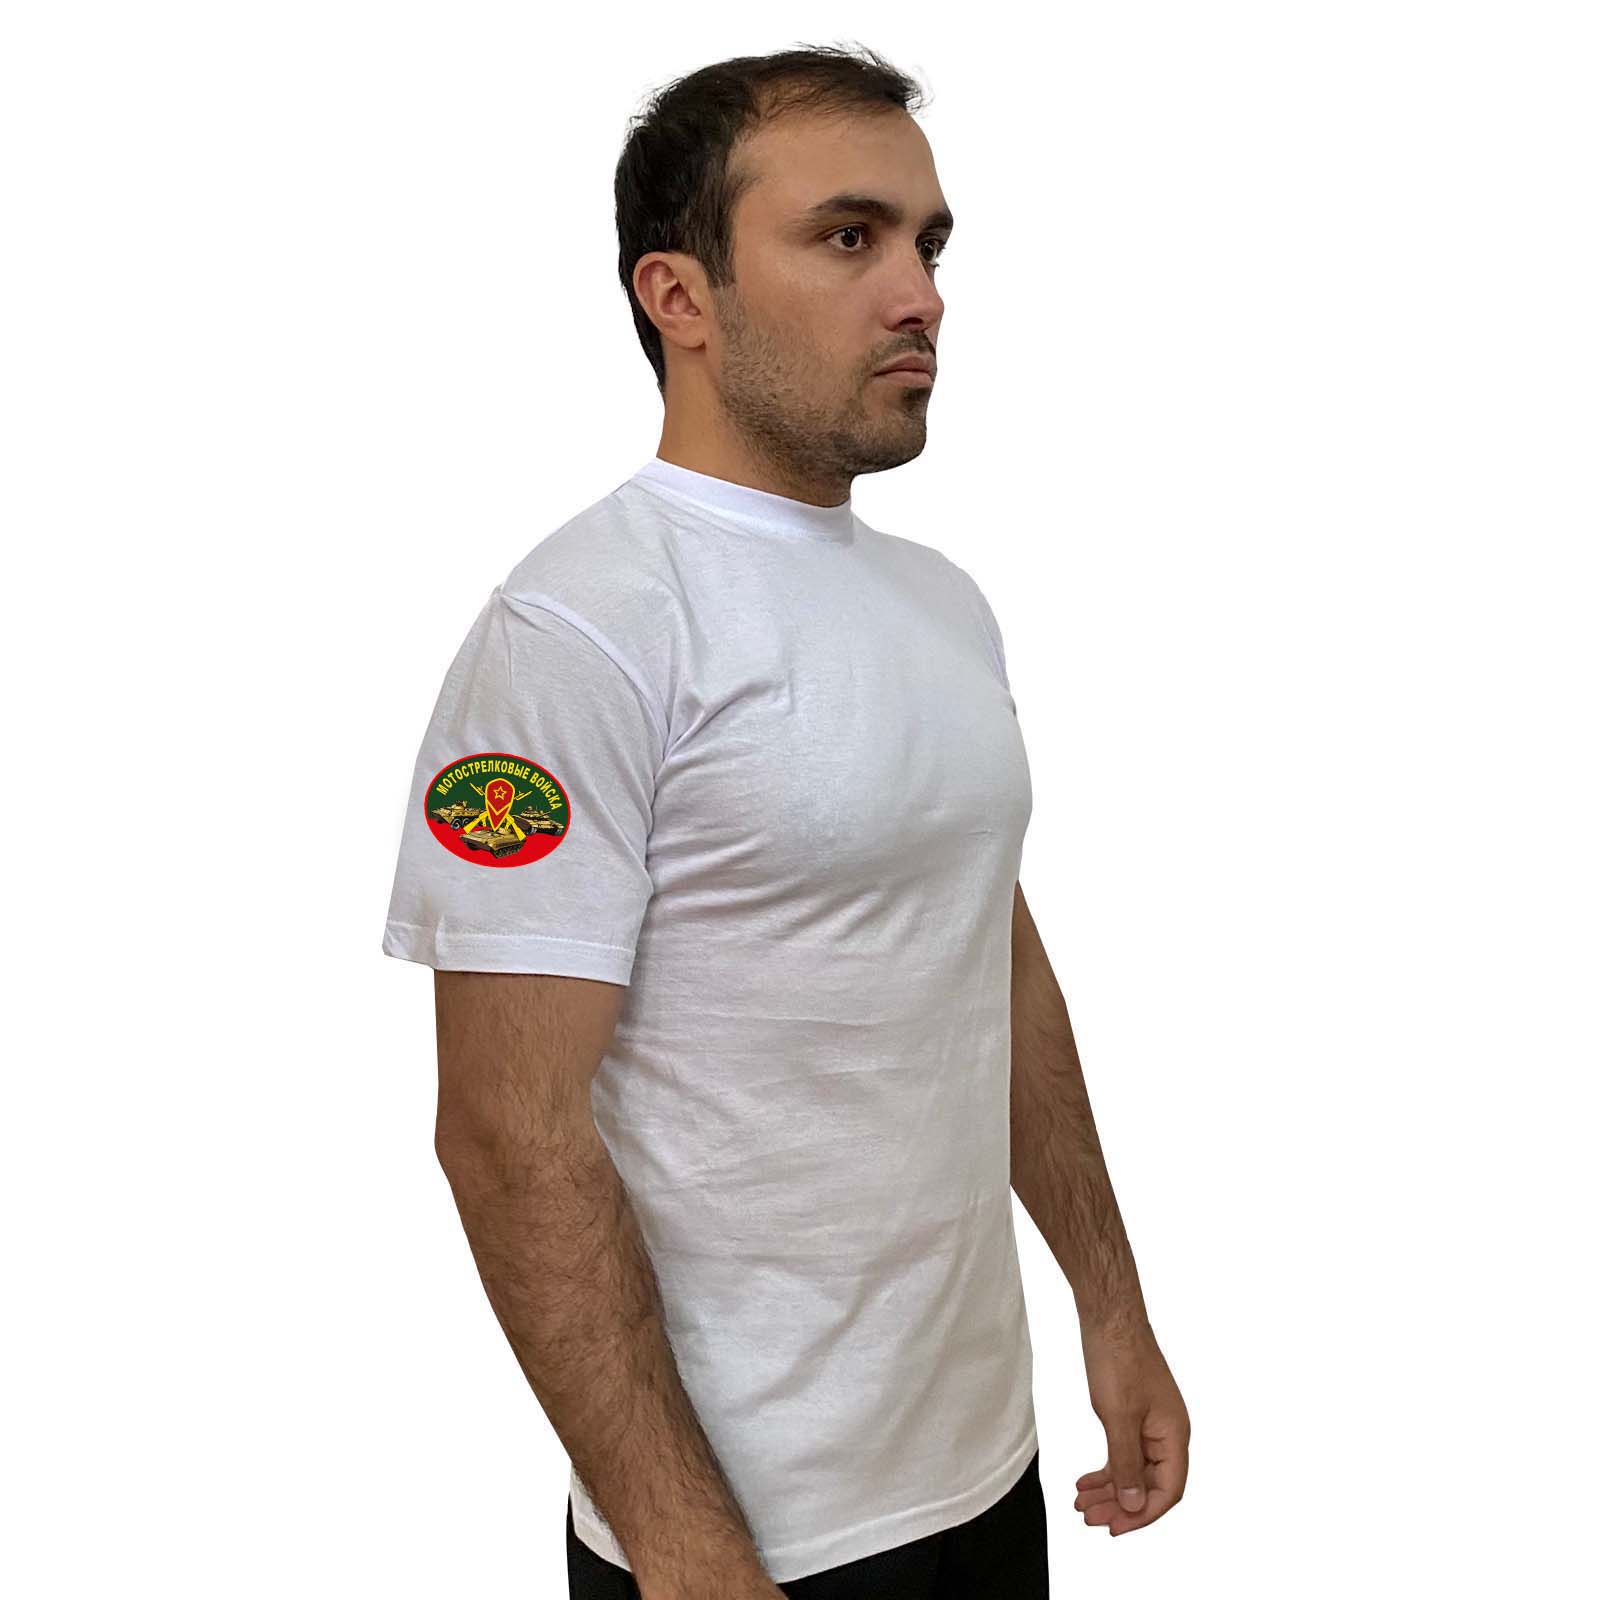 Купить мужскую белую футболку с термотрансфером Мотострелковые Войска онлайн